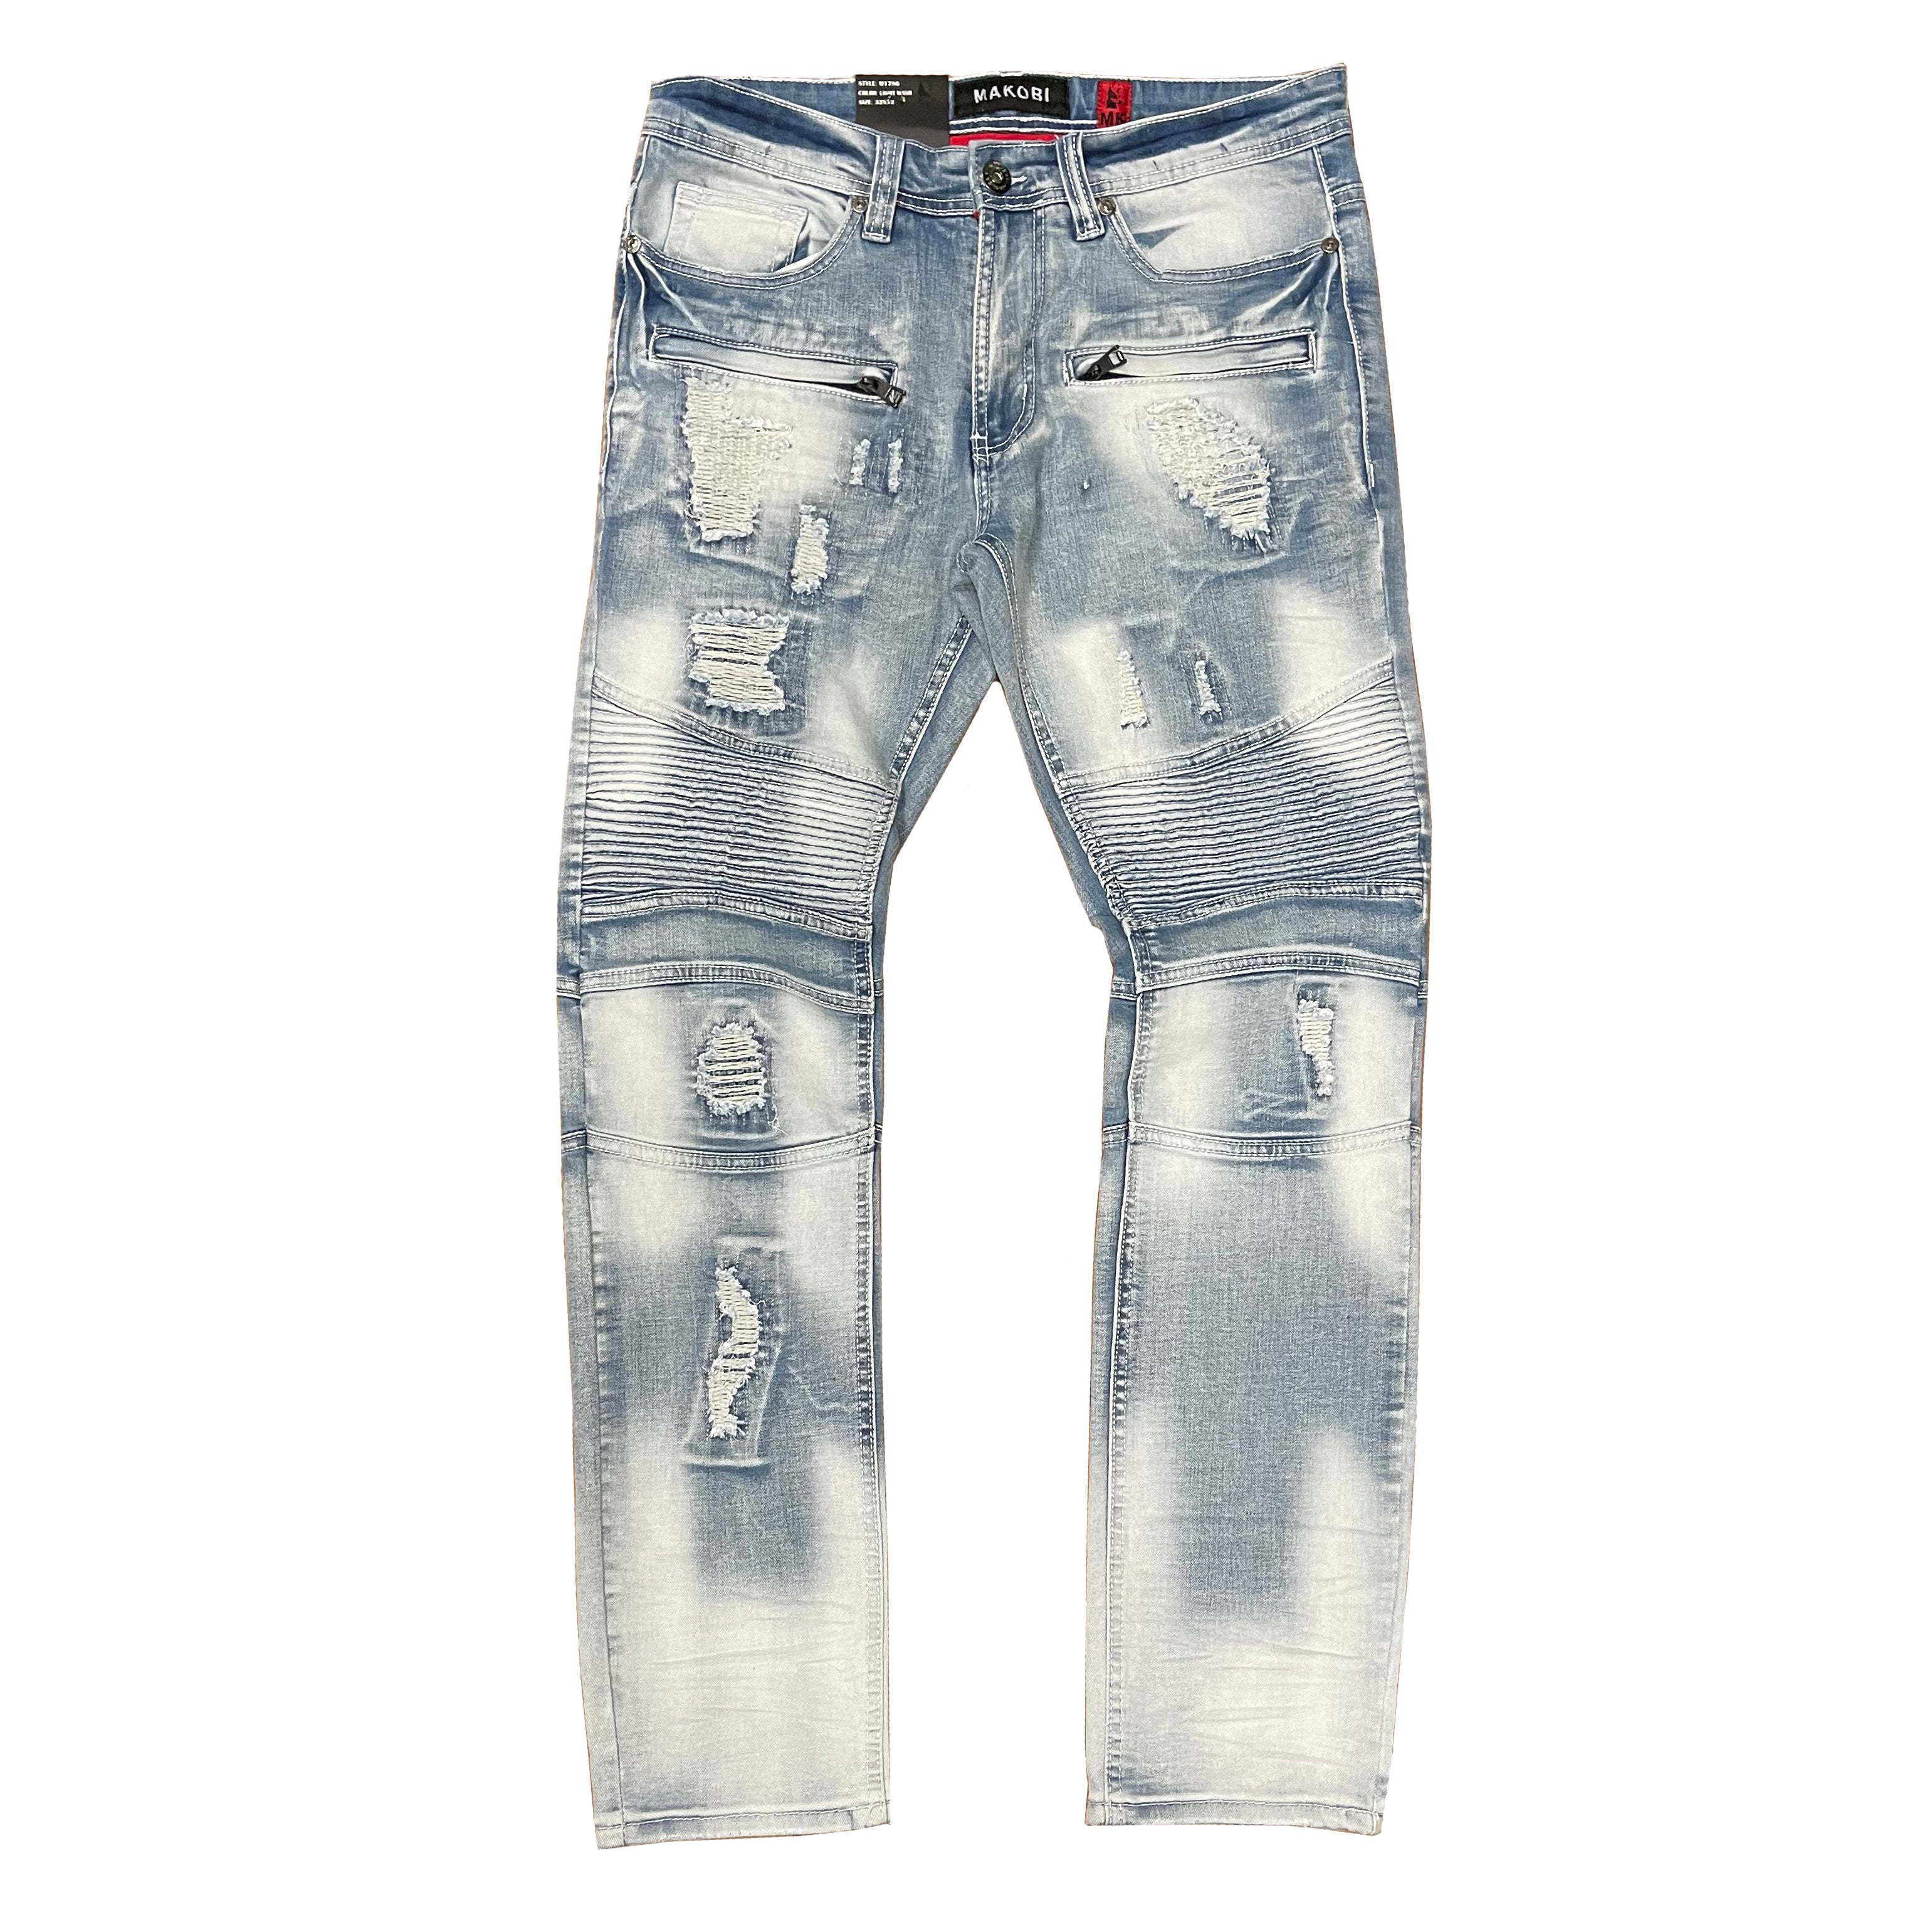 M1786 Makobi Prado Biker Jeans pẹlu Rip & Tunṣe - Igbẹ Imọlẹ (RECUT)